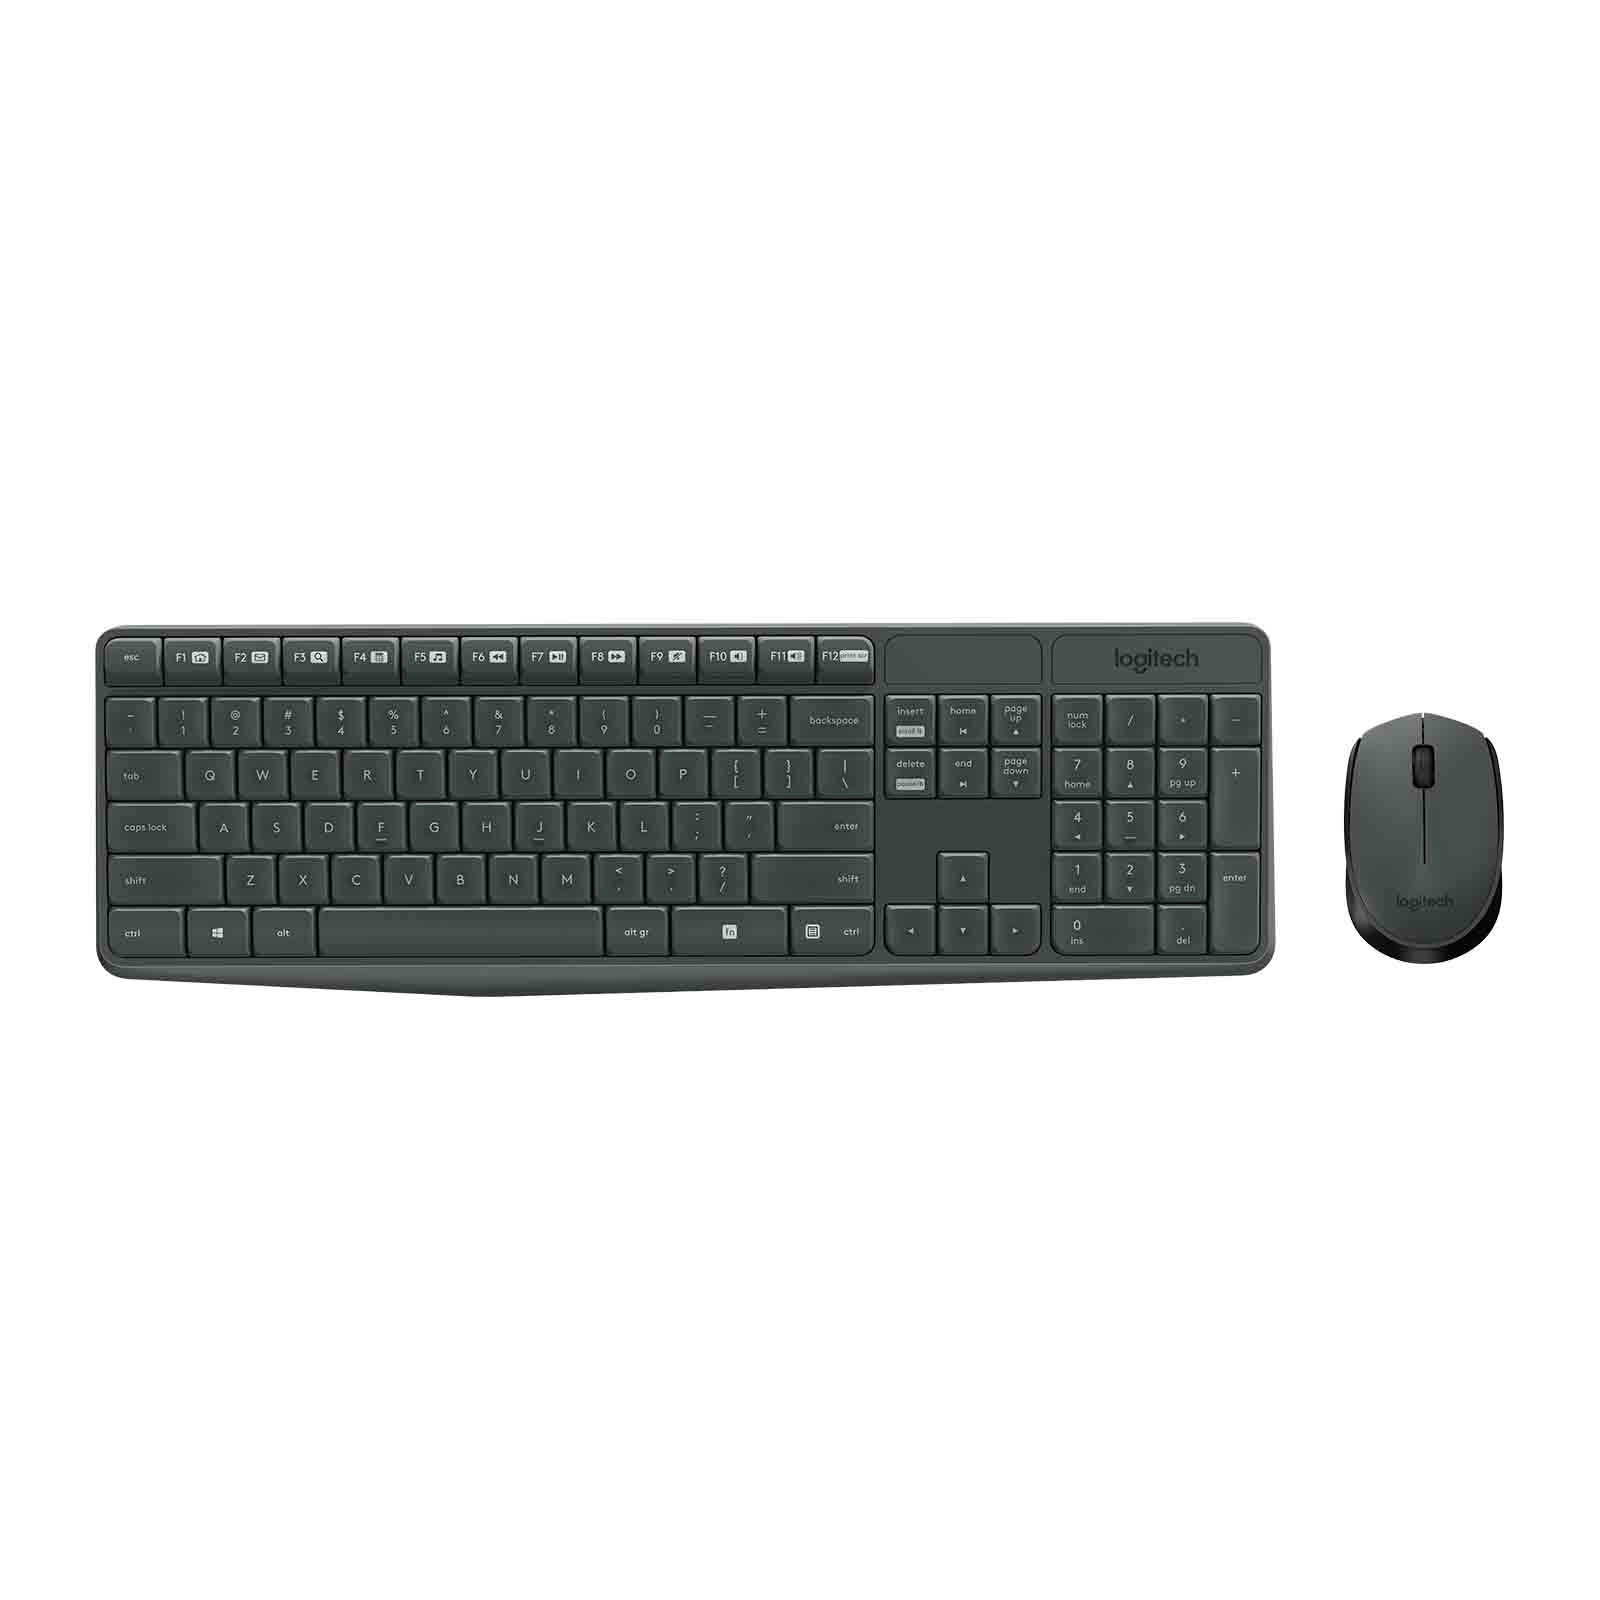 KEYBOARD WIRELESS LOGITECH MK235 +MOUSE BLACK ,Keyboard